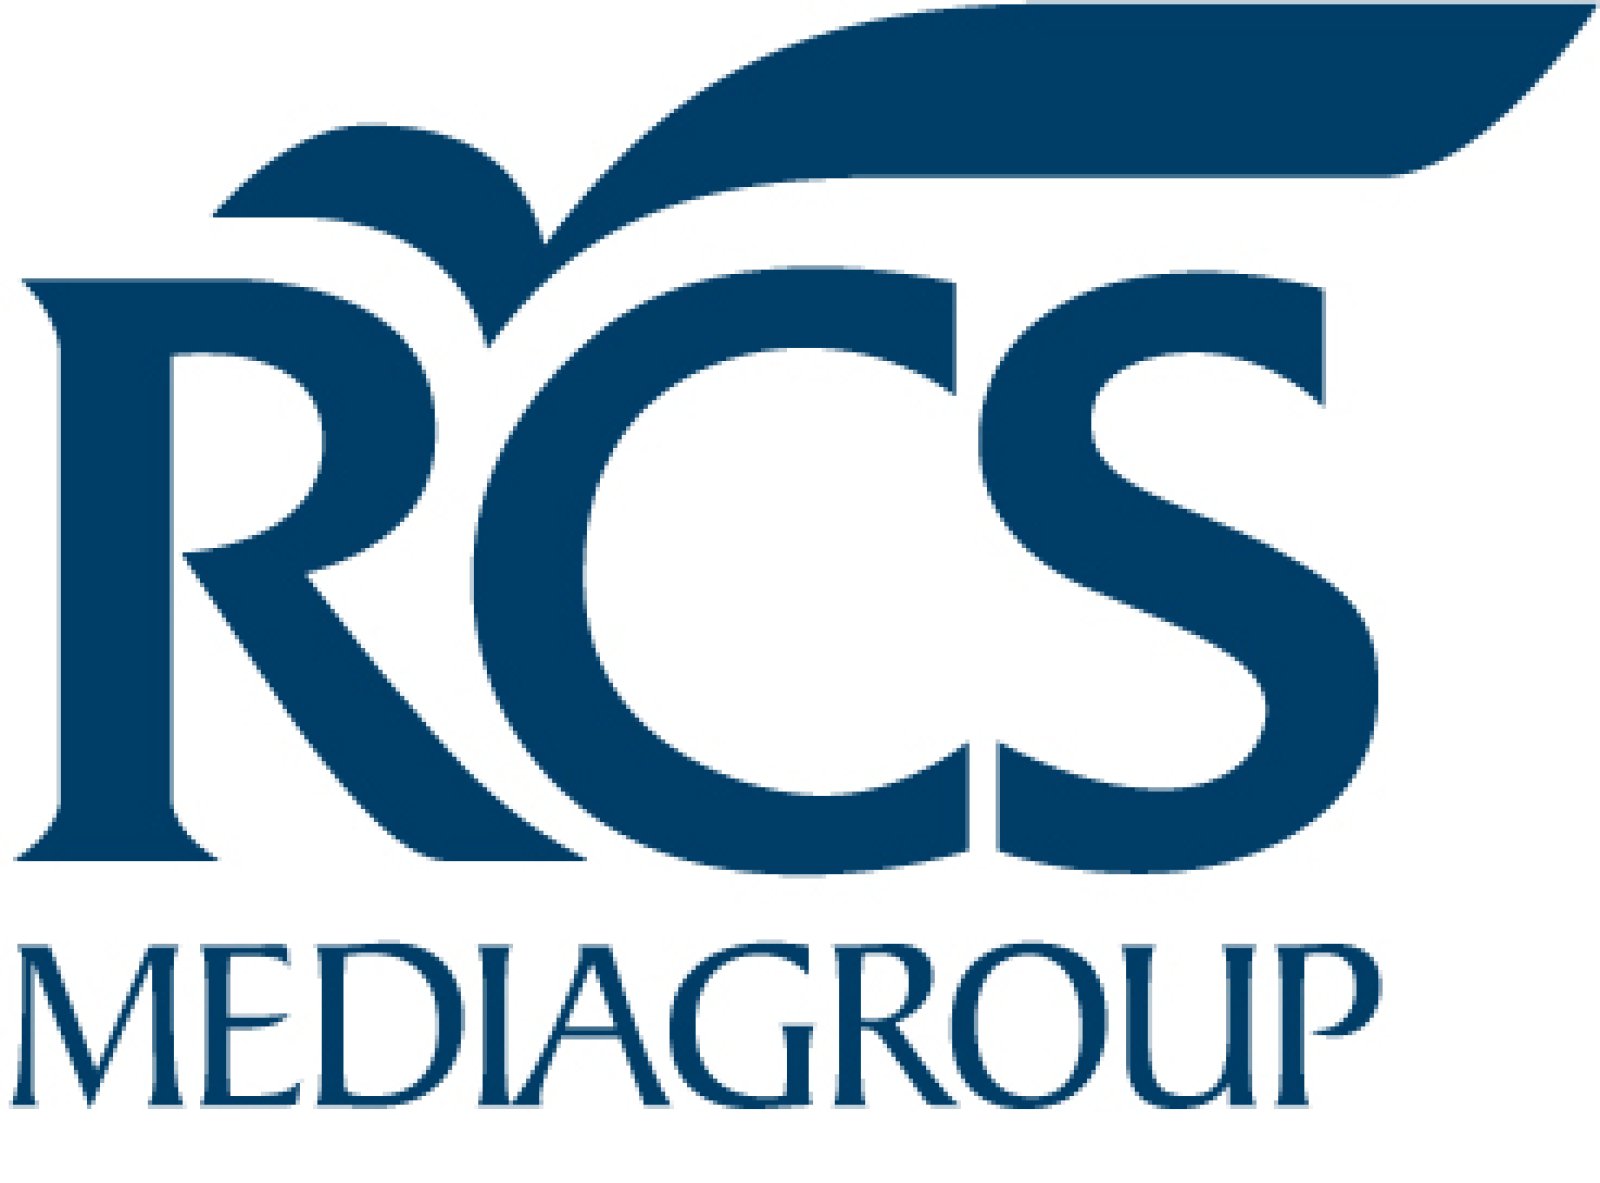 Logo RCS MediaGroup - La Gazzetta dello Sport